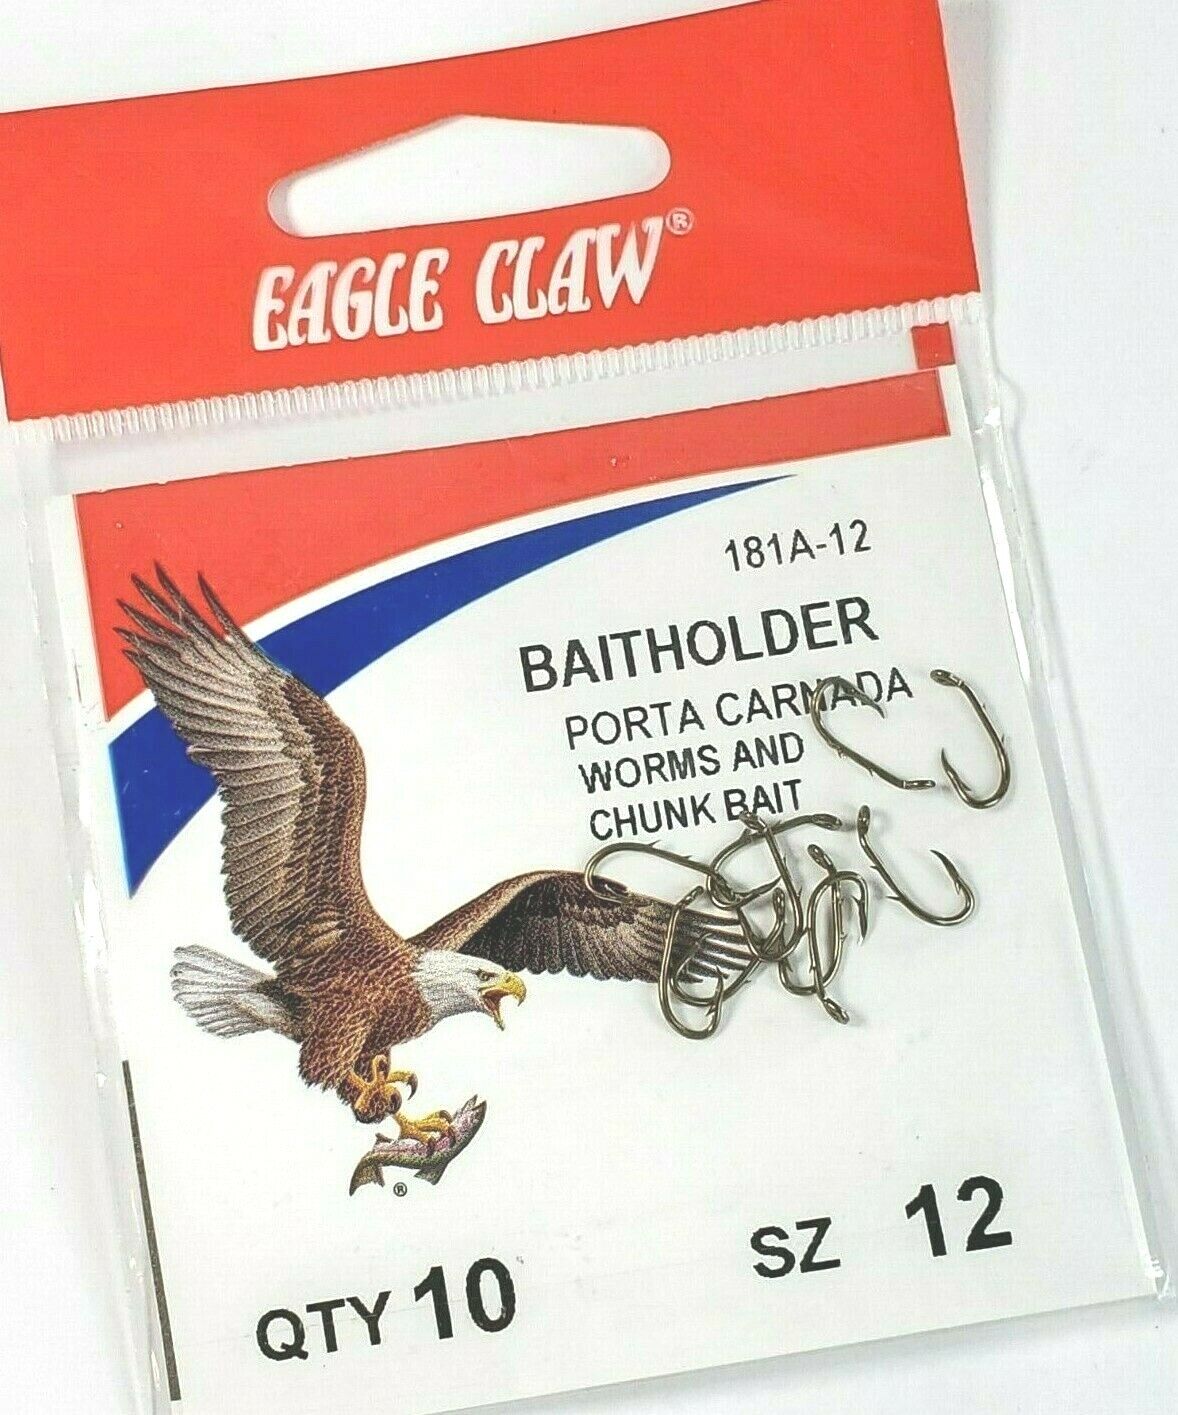 EAGLE CLAW BAITHOLDER WORMS & CHUNK BAIT HOOK